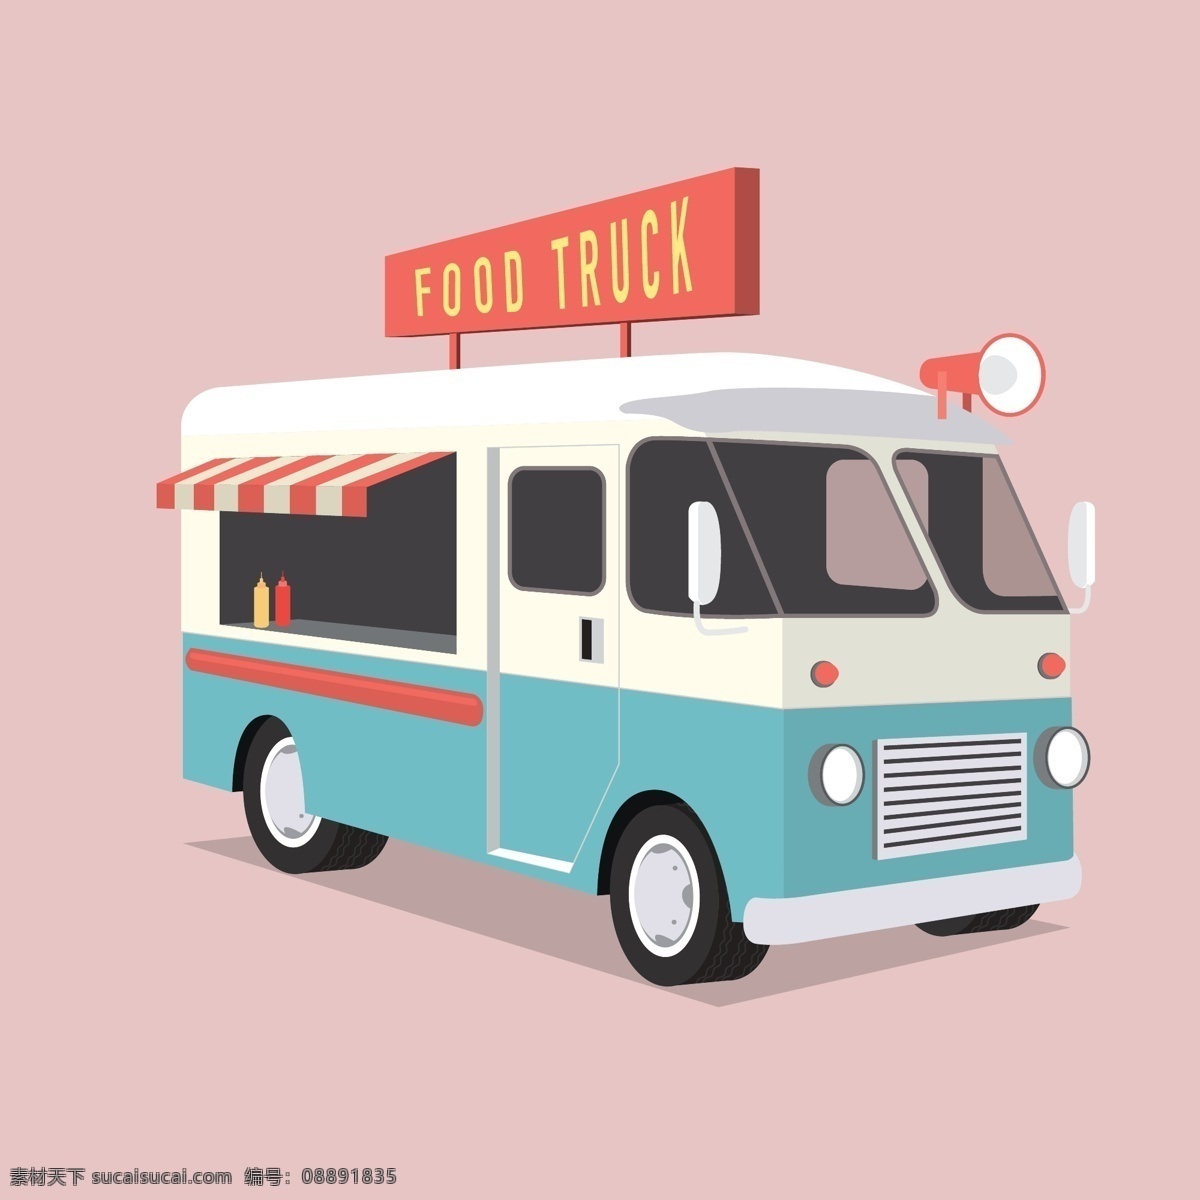 复古 食品 车 食物 零食 交通工具 喇叭 食品车 餐车